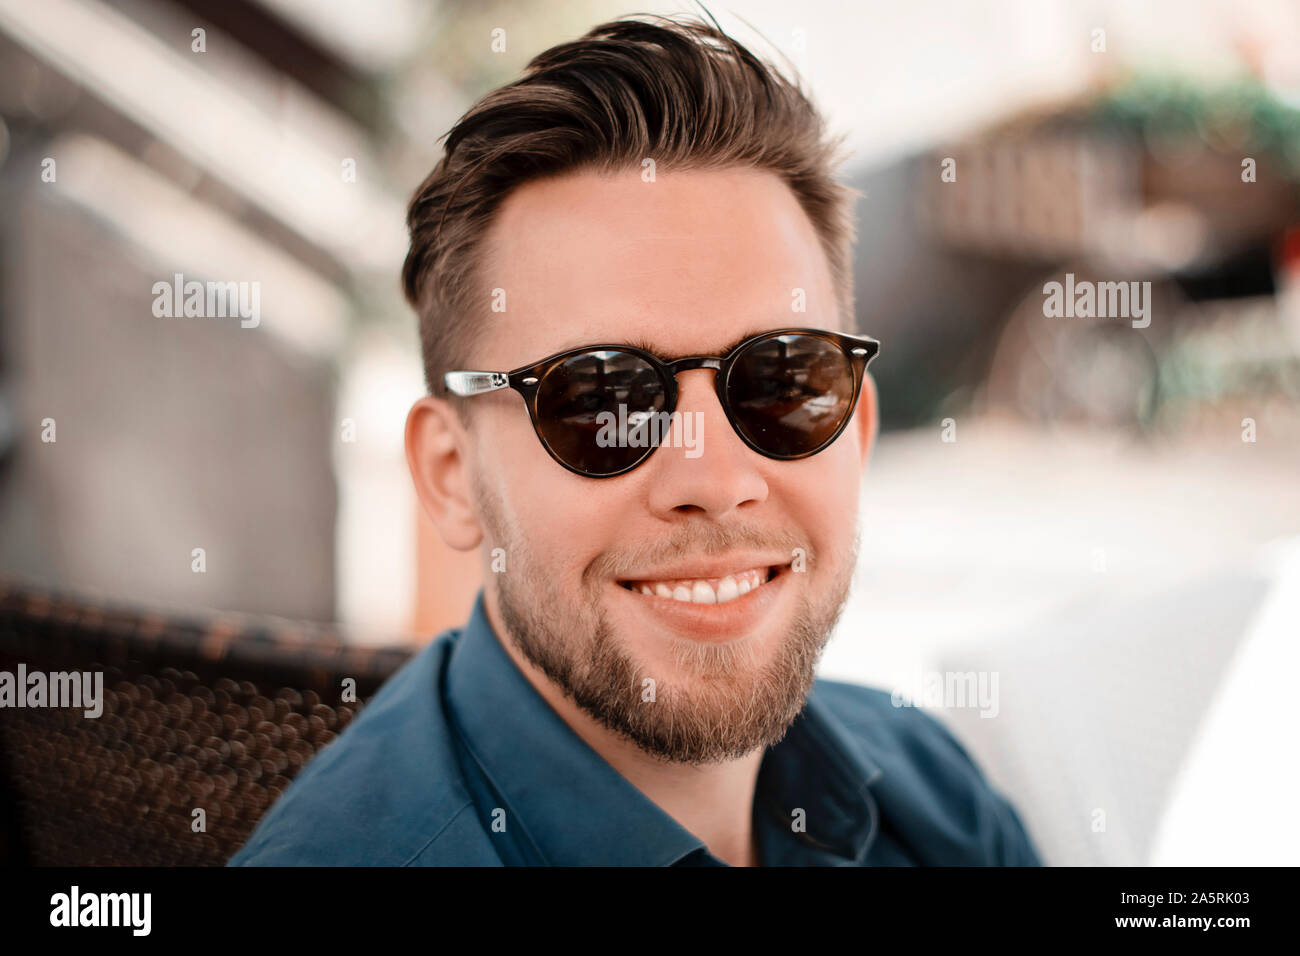 Porträt der jungen gutaussehenden Mann in Teal Blue Shirt mit Sonnenbrille und trendy Frisur. Mann lächelt und schaut in die Kamera draußen in einem Café. Stockfoto